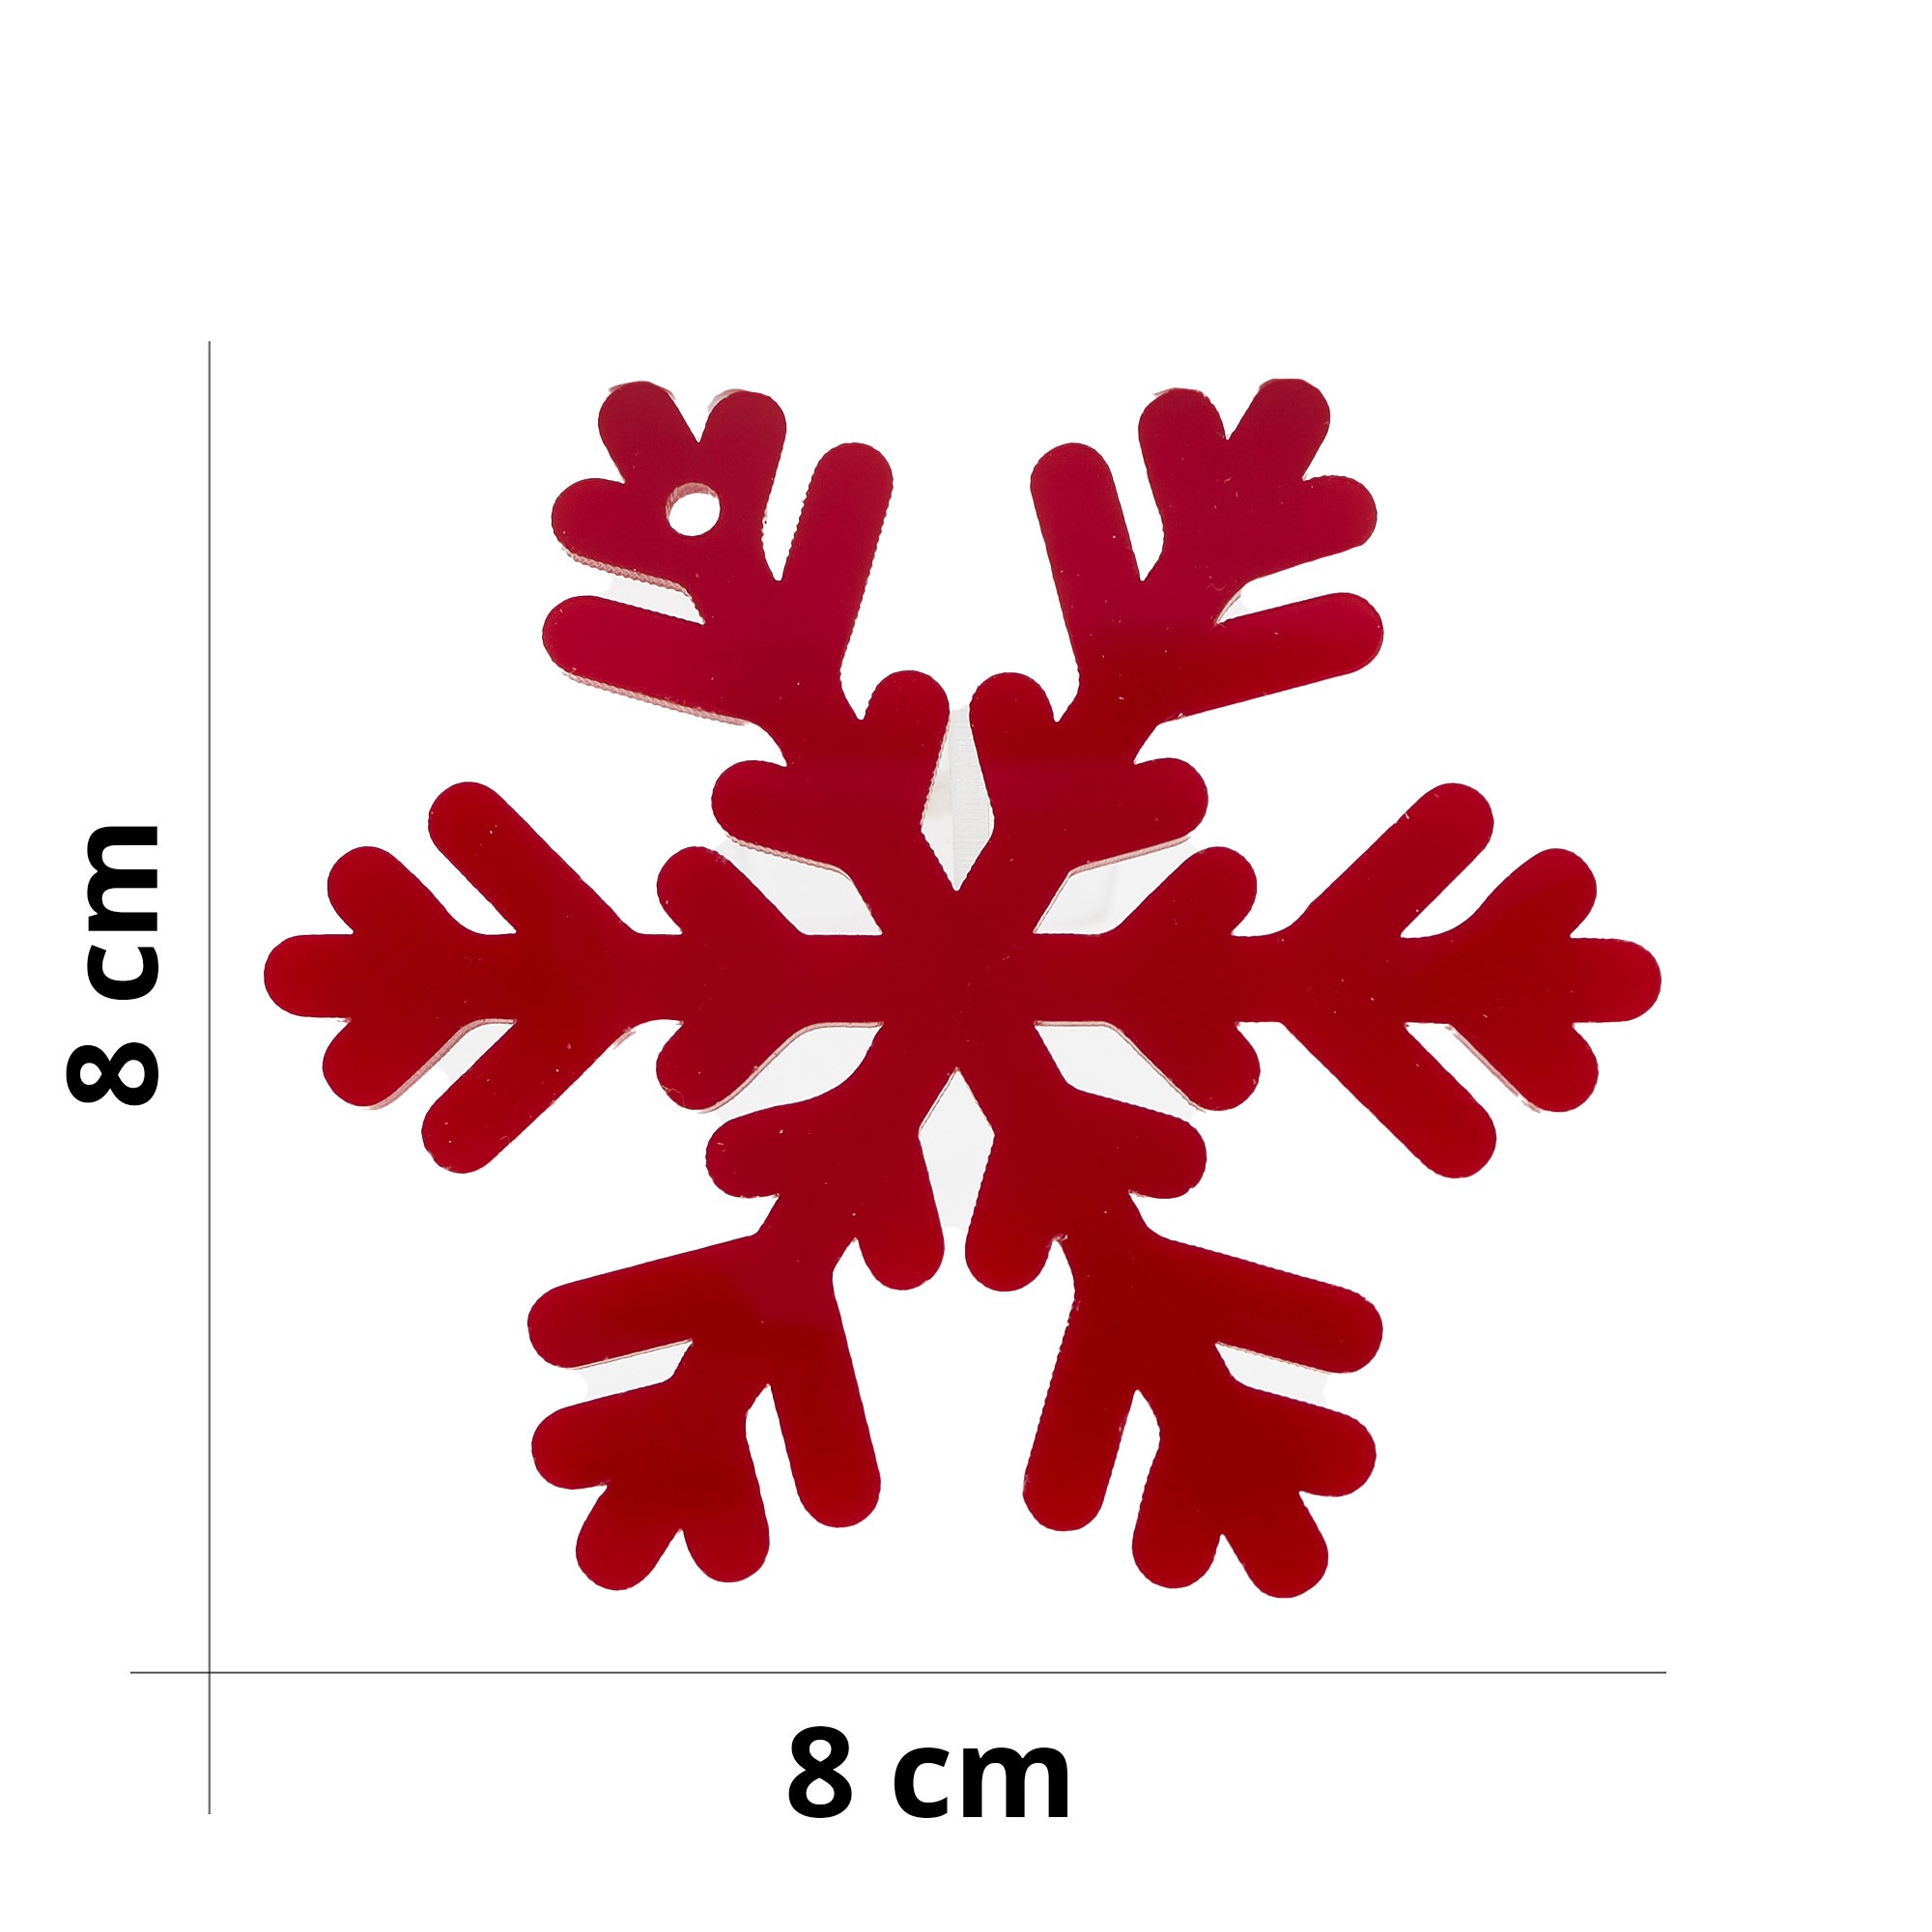 Fiocco di neve - Decorazione in plexiglass - Misura 8 x 8 cm